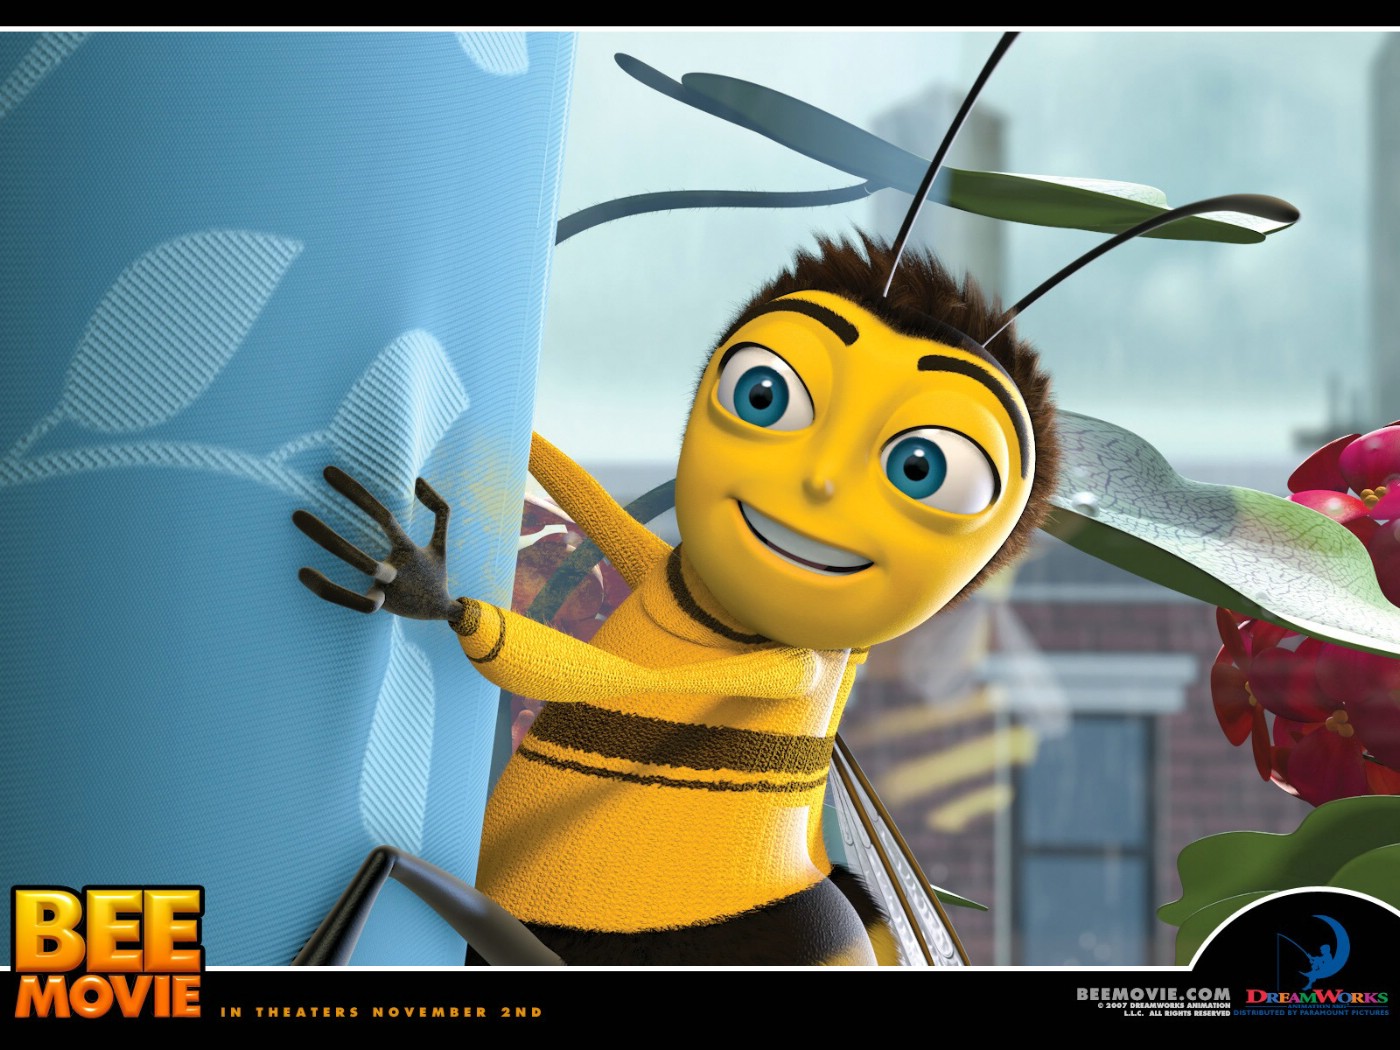 壁纸1400x1050电影壁纸 蜜蜂总动员 一只小蜜蜂 Bee Movie 2007 蜂电影 一只小蜜蜂壁纸 Movie Wallpaper Bee Movie 2007壁纸 《蜜蜂总动员 Bee Movie》壁纸 《蜜蜂总动员 Bee Movie》图片 《蜜蜂总动员 Bee Movie》素材 影视壁纸 影视图库 影视图片素材桌面壁纸